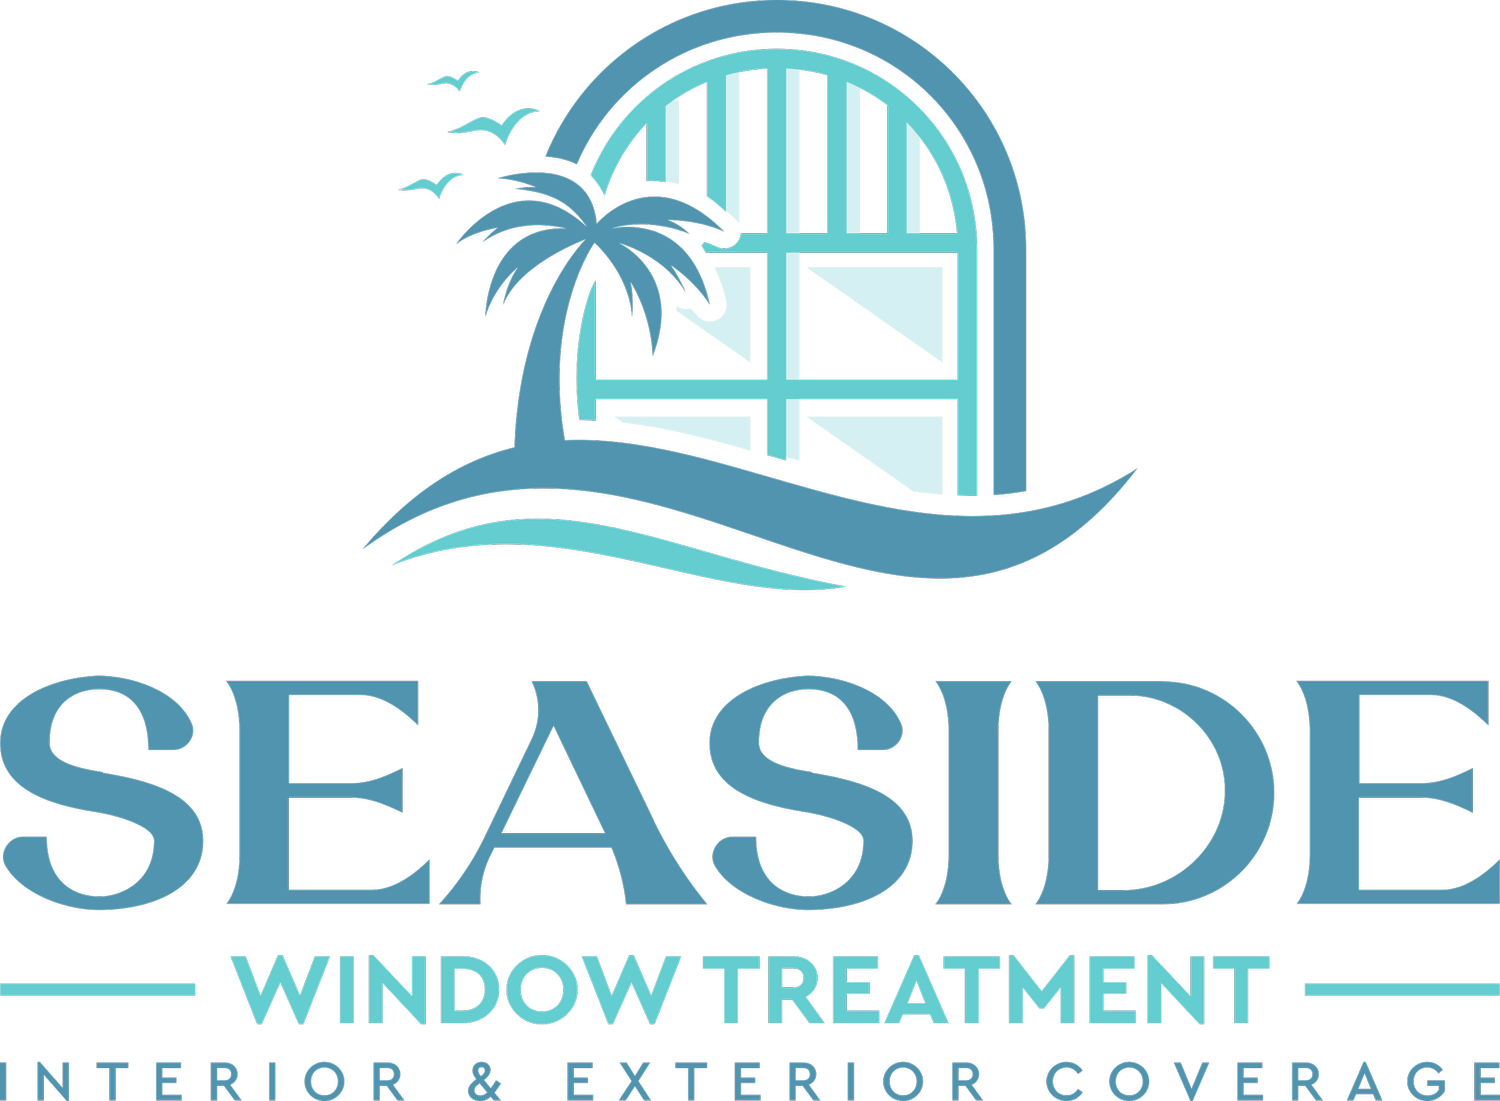 Seaside Window Treatment